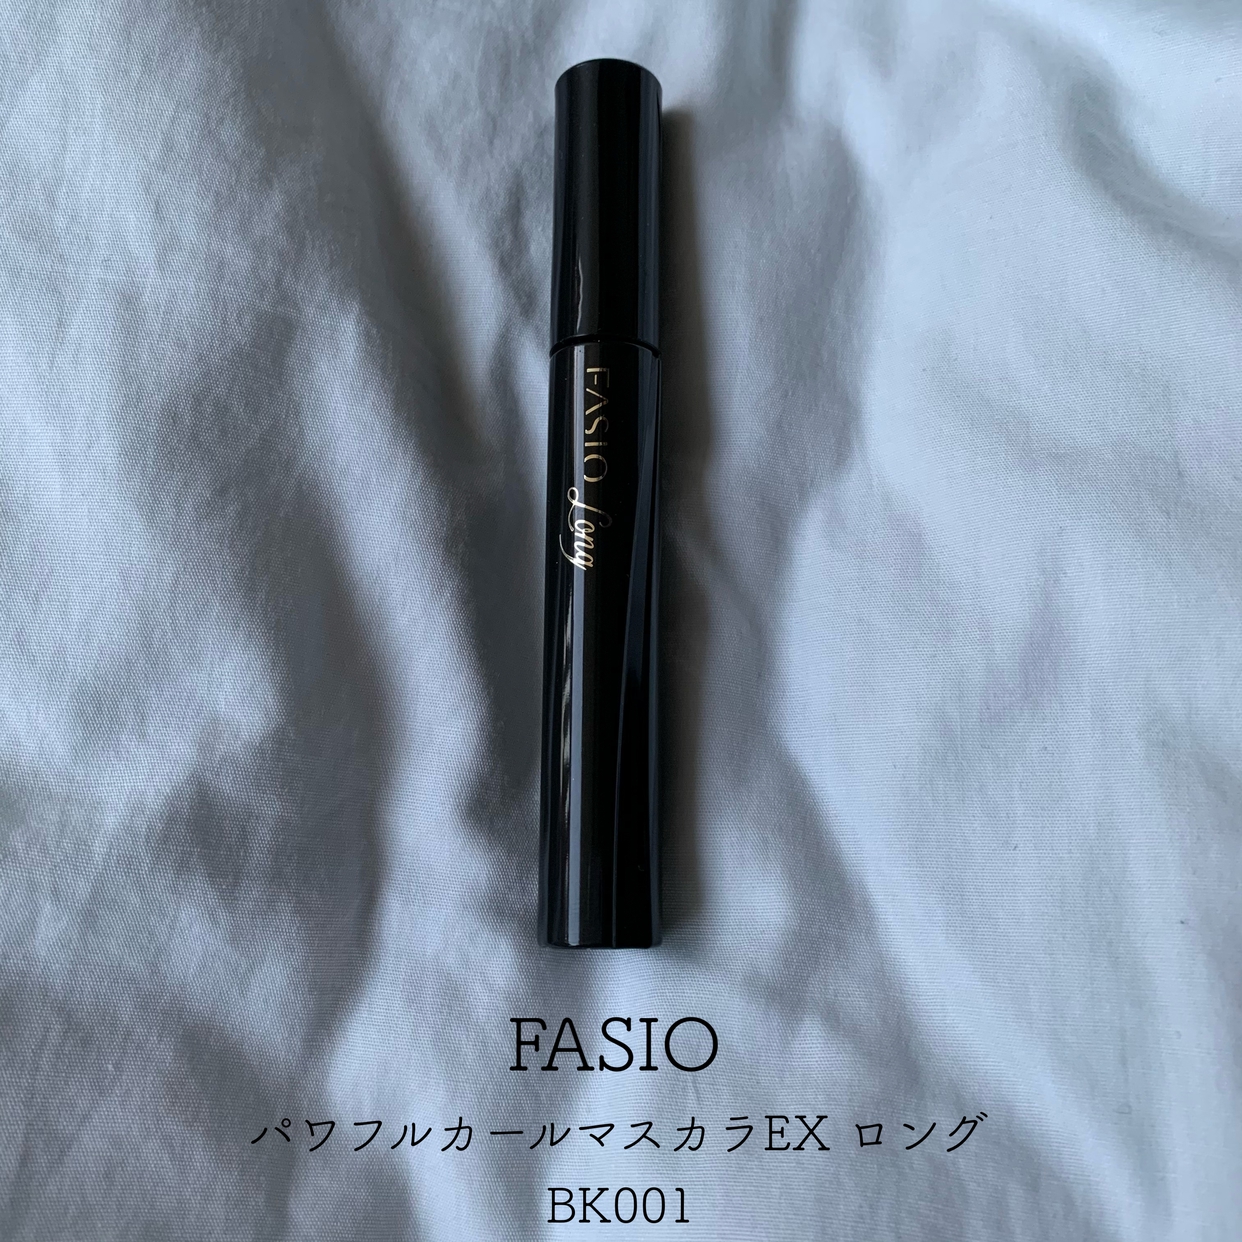 Fasio(ファシオ) パワフルカール マスカラ EX ロングを使ったとあさんのクチコミ画像1